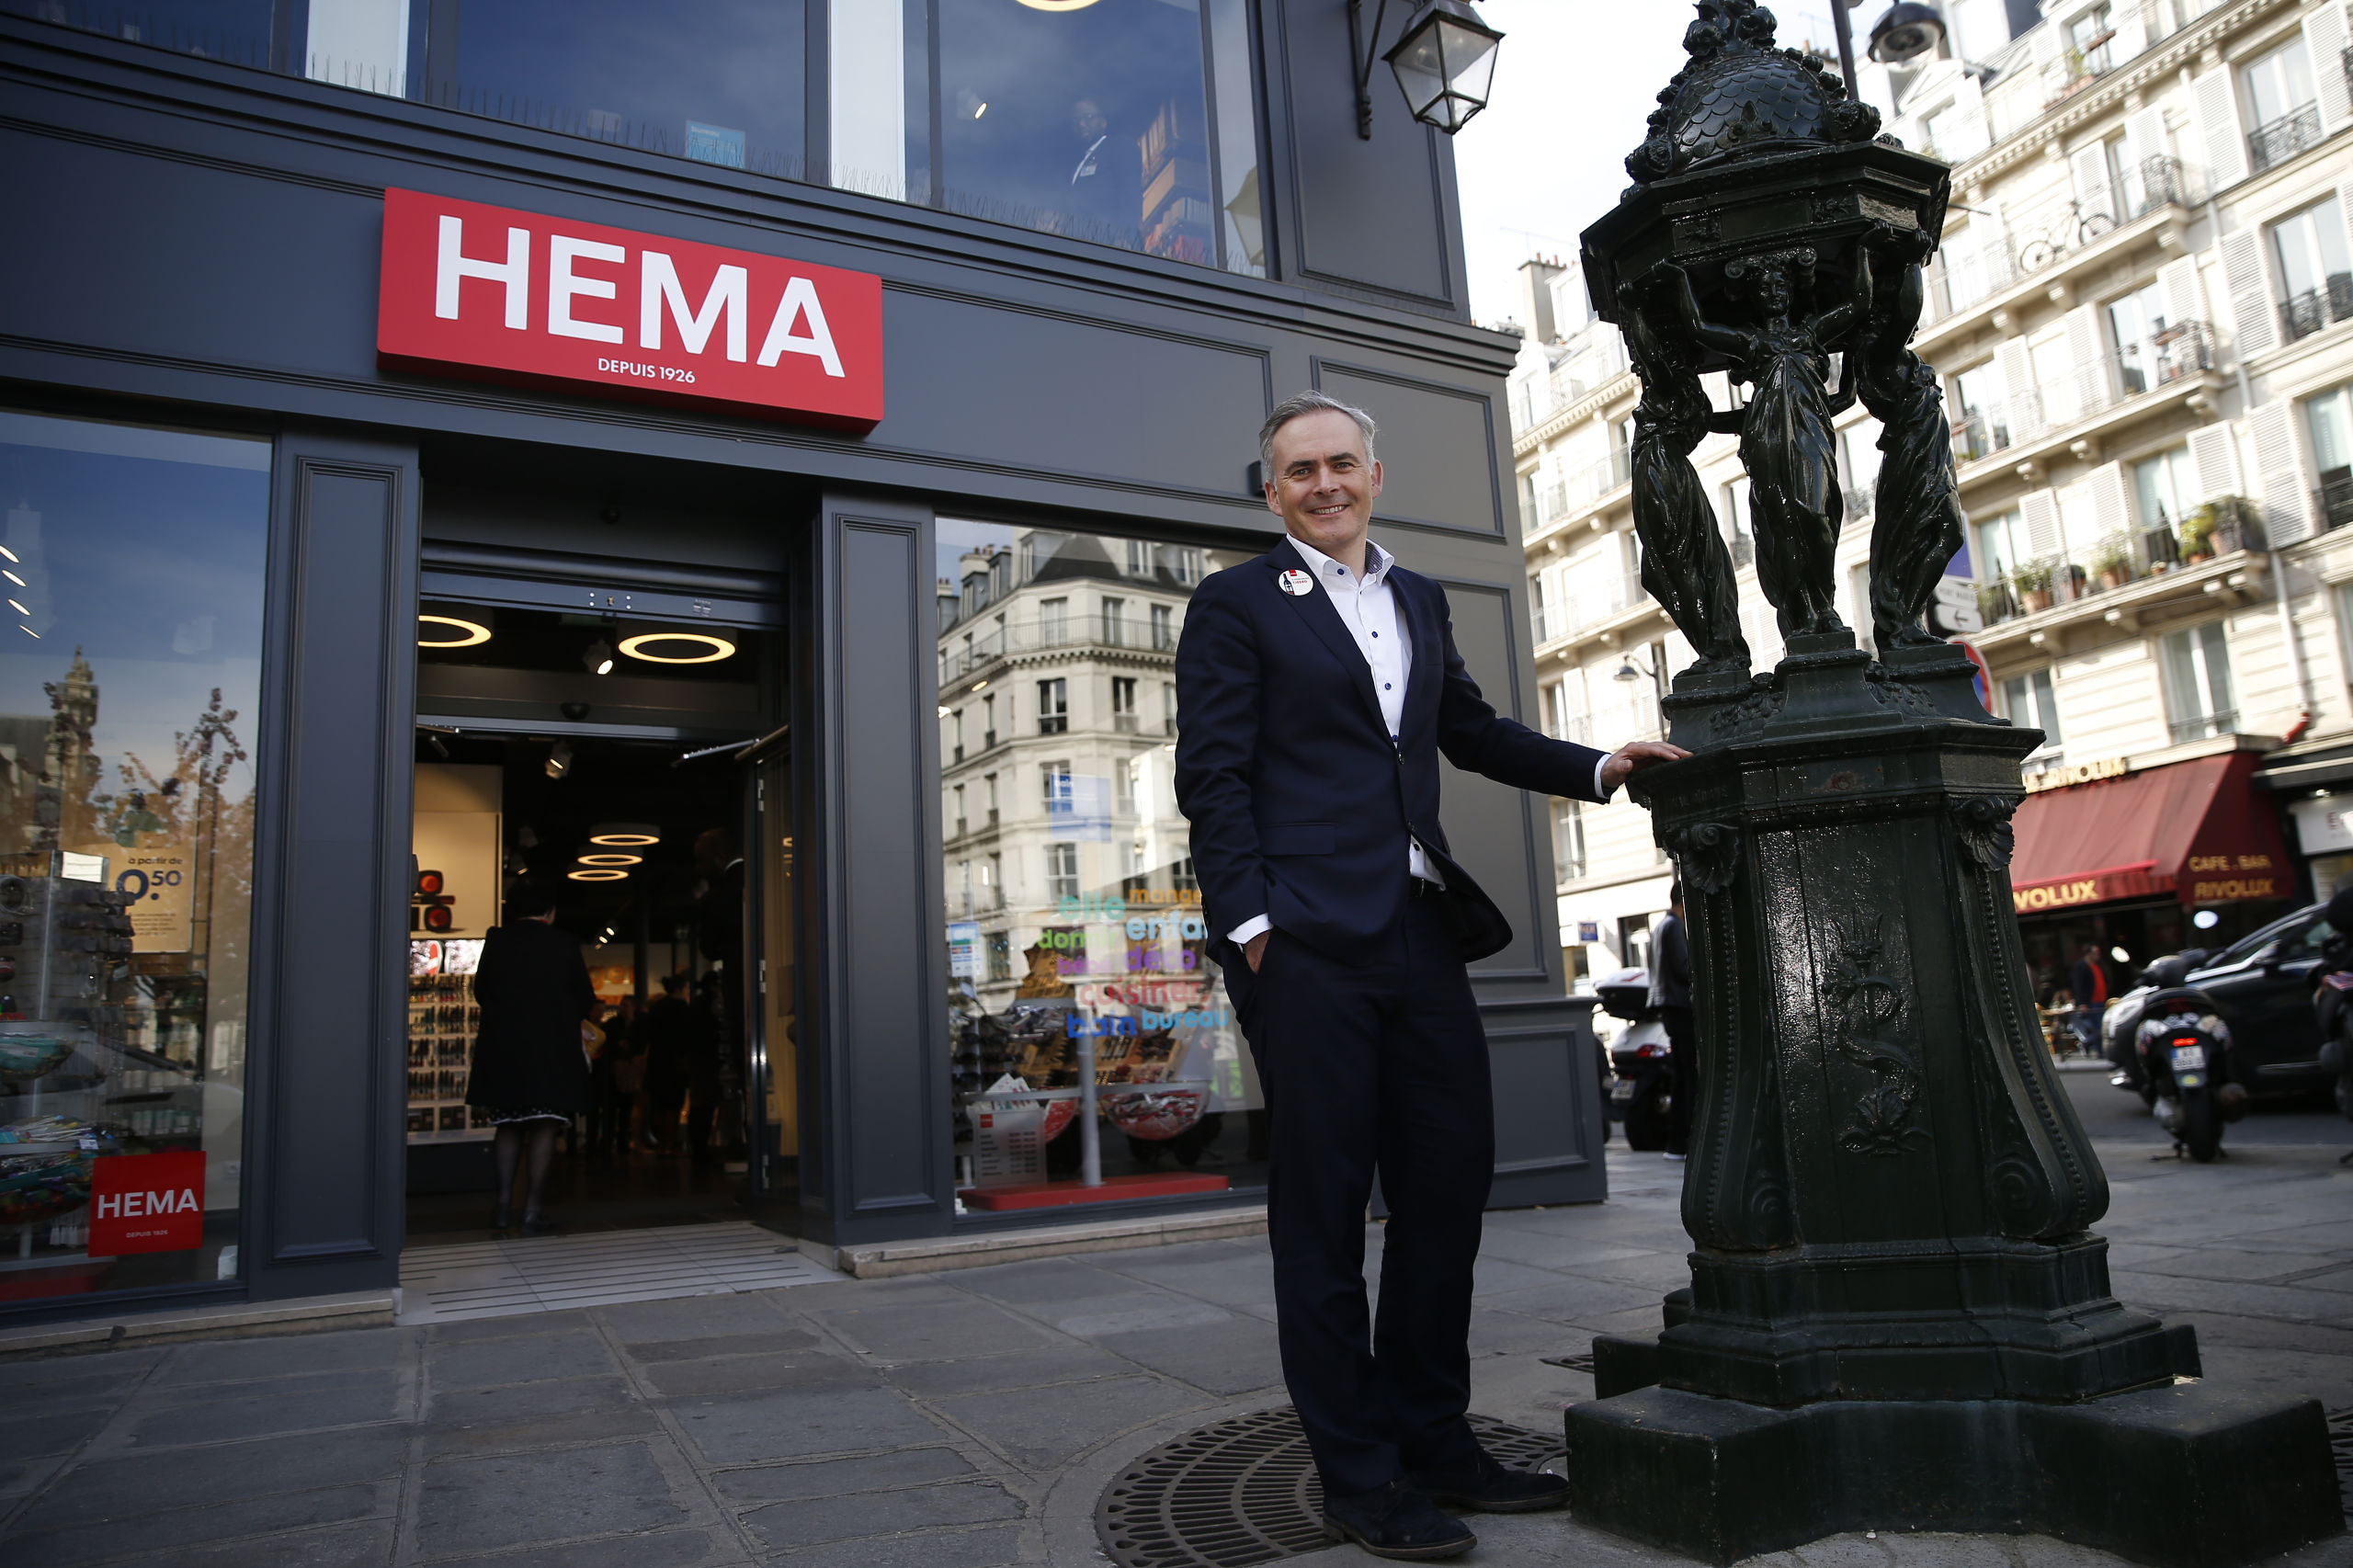 HEMA-CEO Tjeerd Jegen